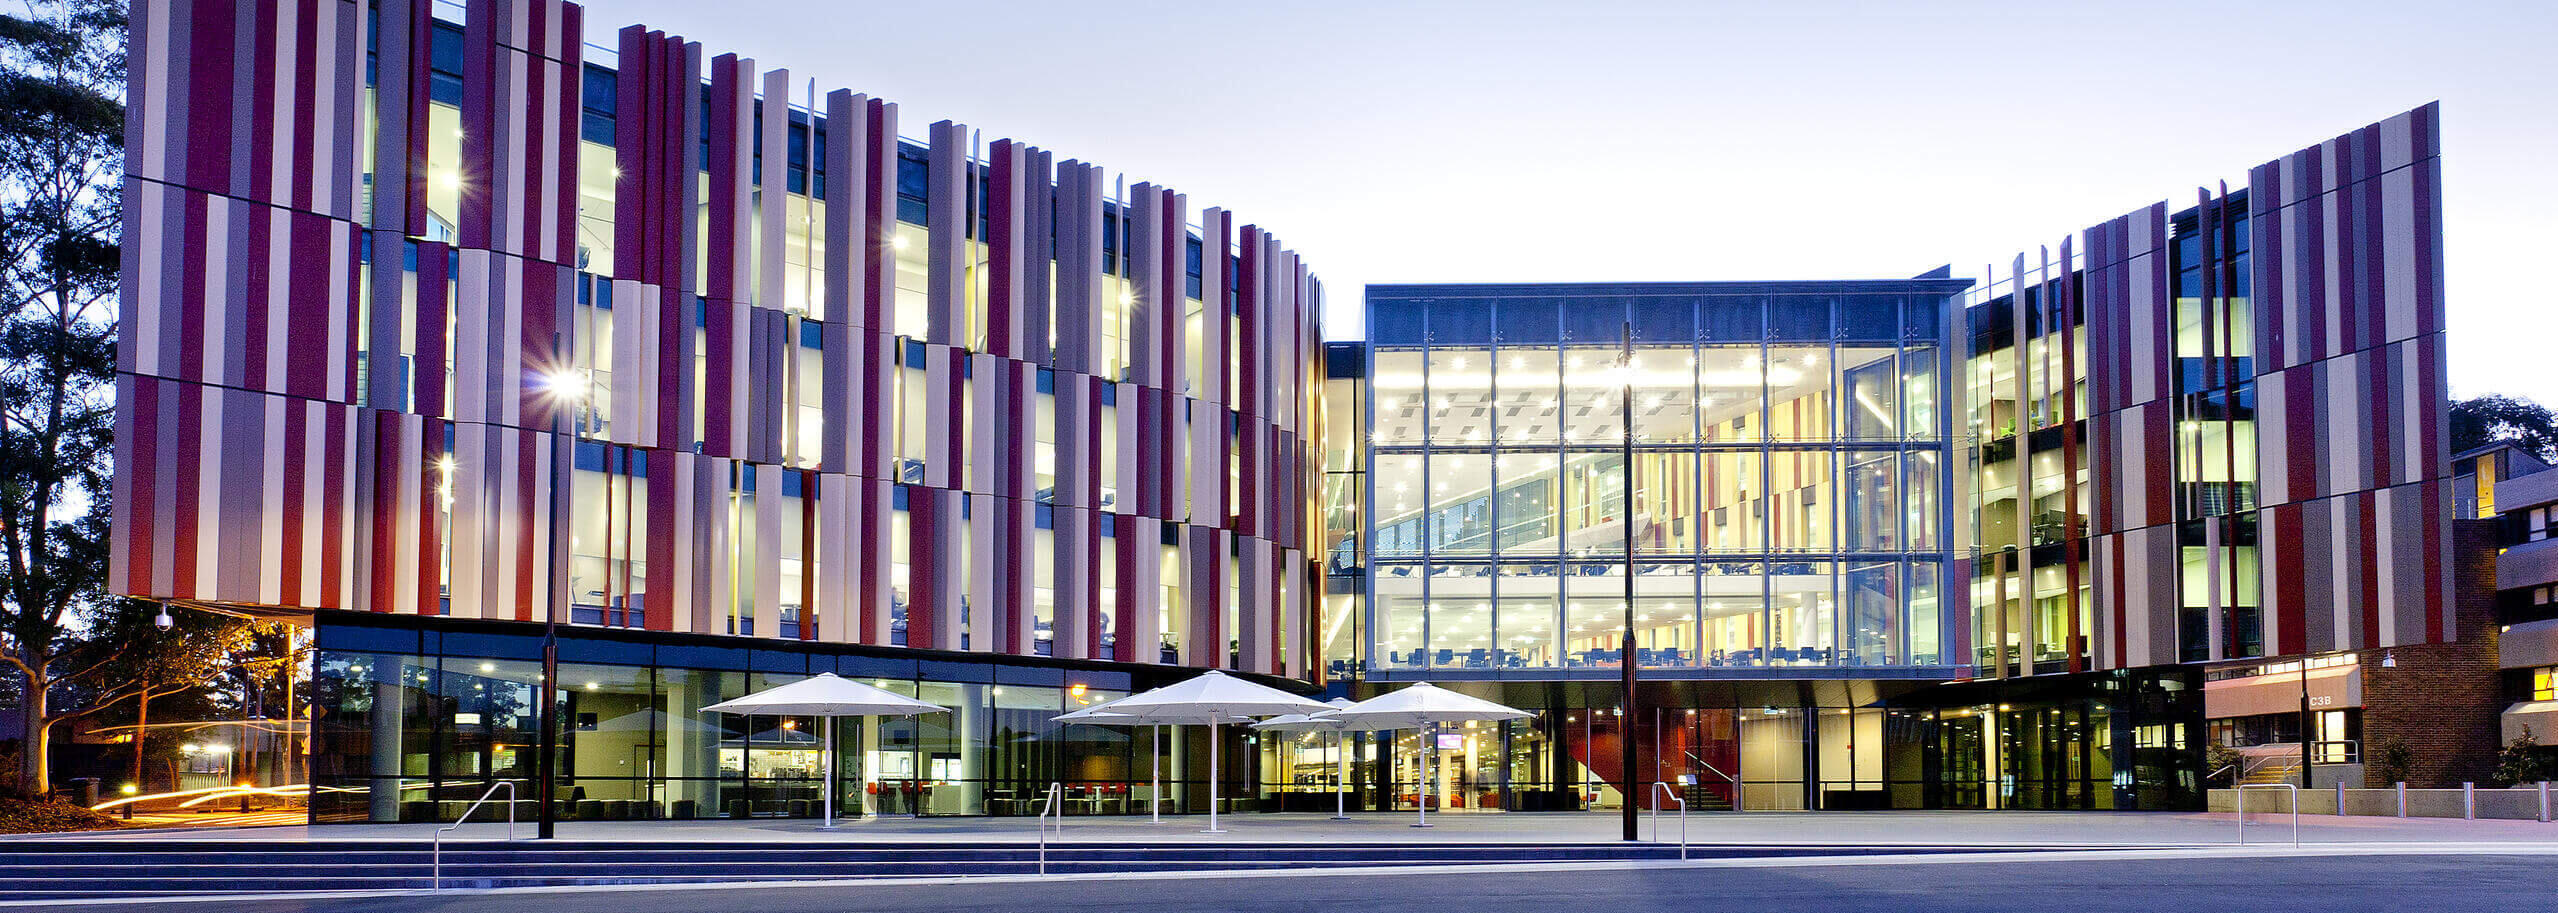 Macquarie University Campus